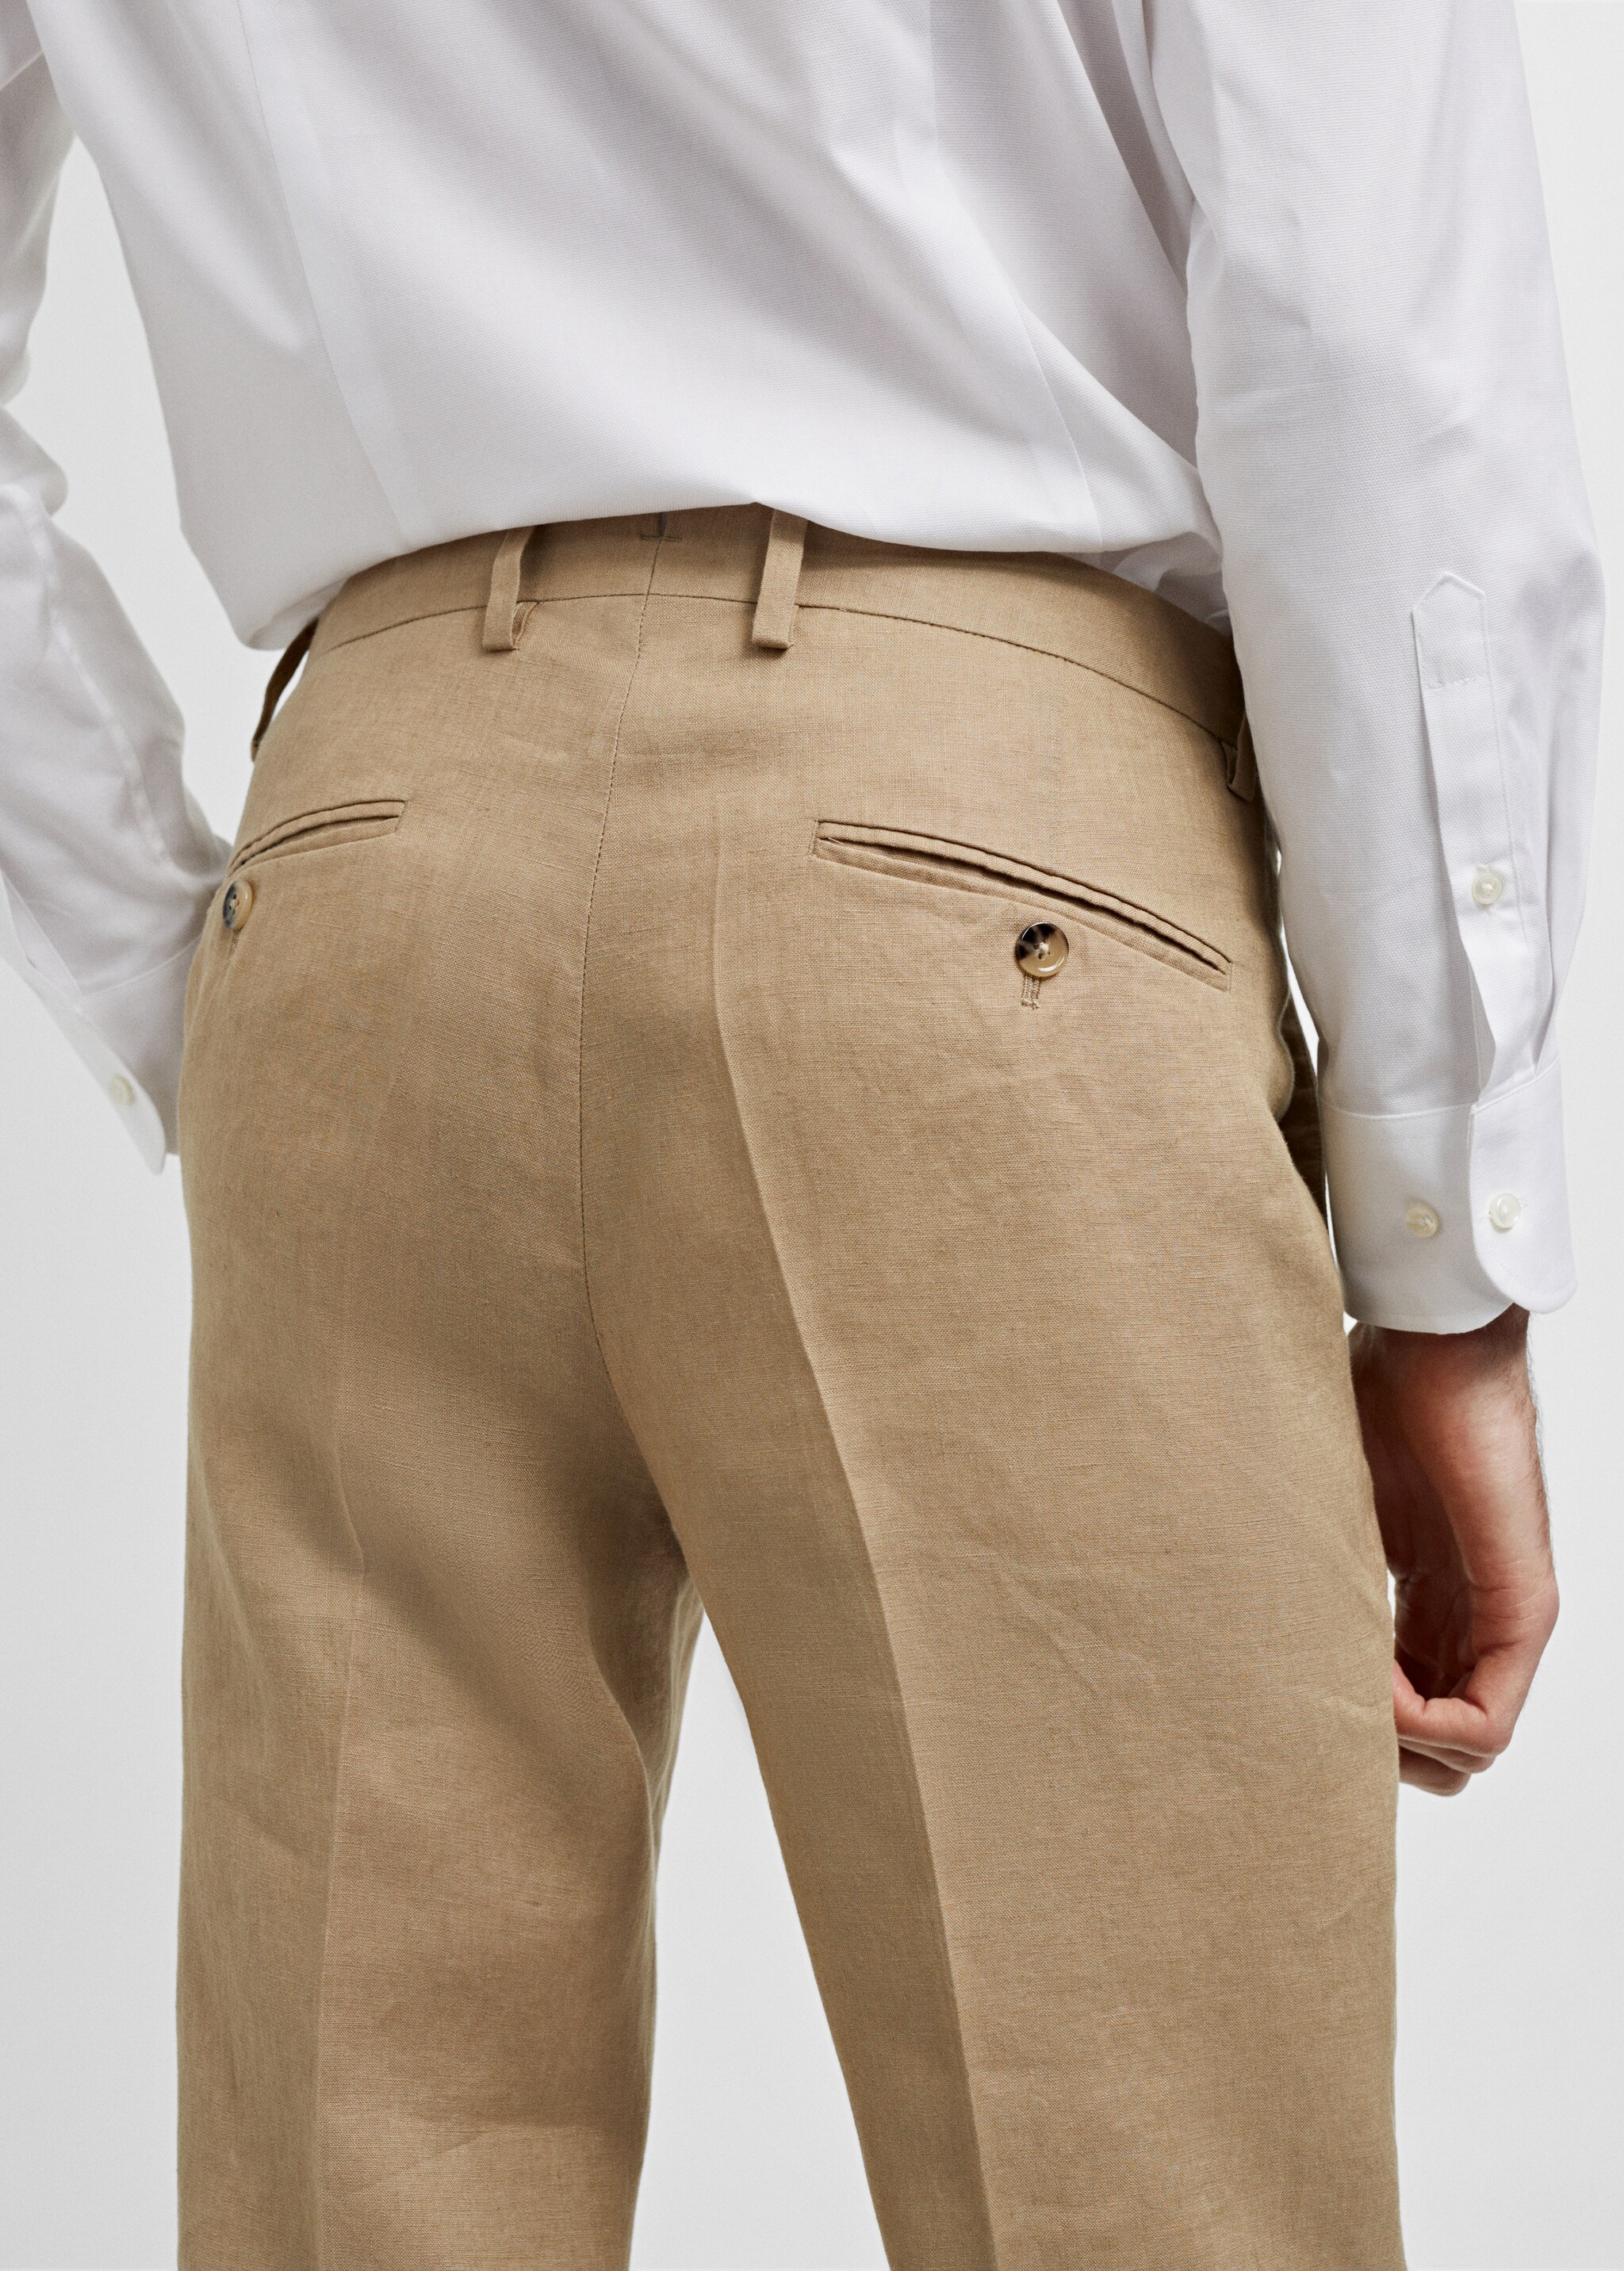 Slim fit suit pants 100% linen - Details of the article 4